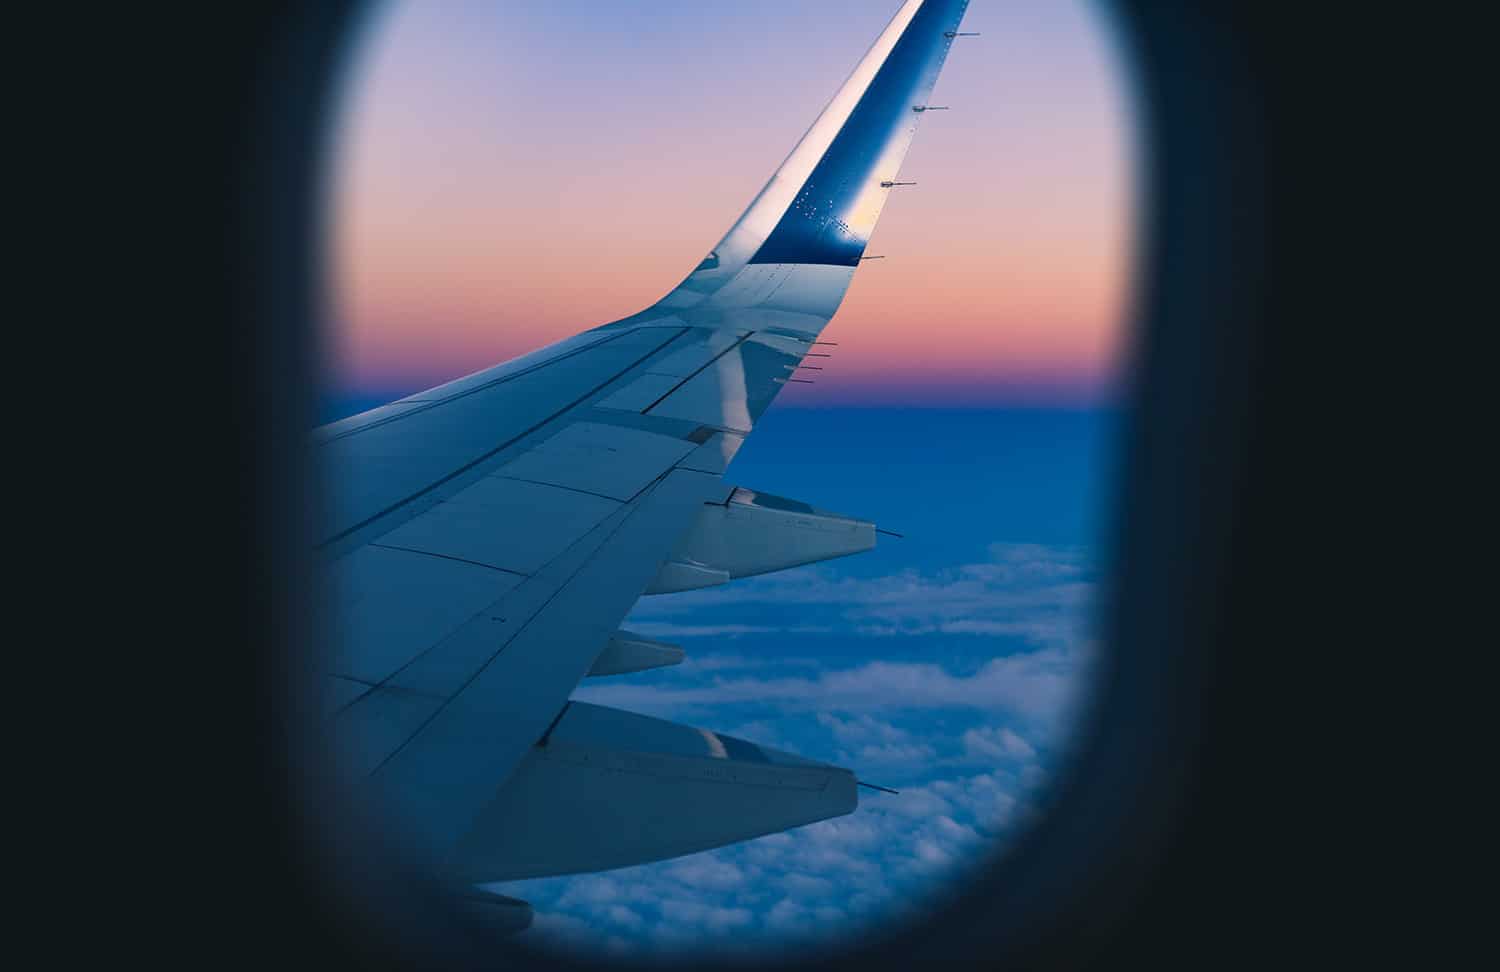 Voyager en avion : Les conseils et astuces de voyageurs